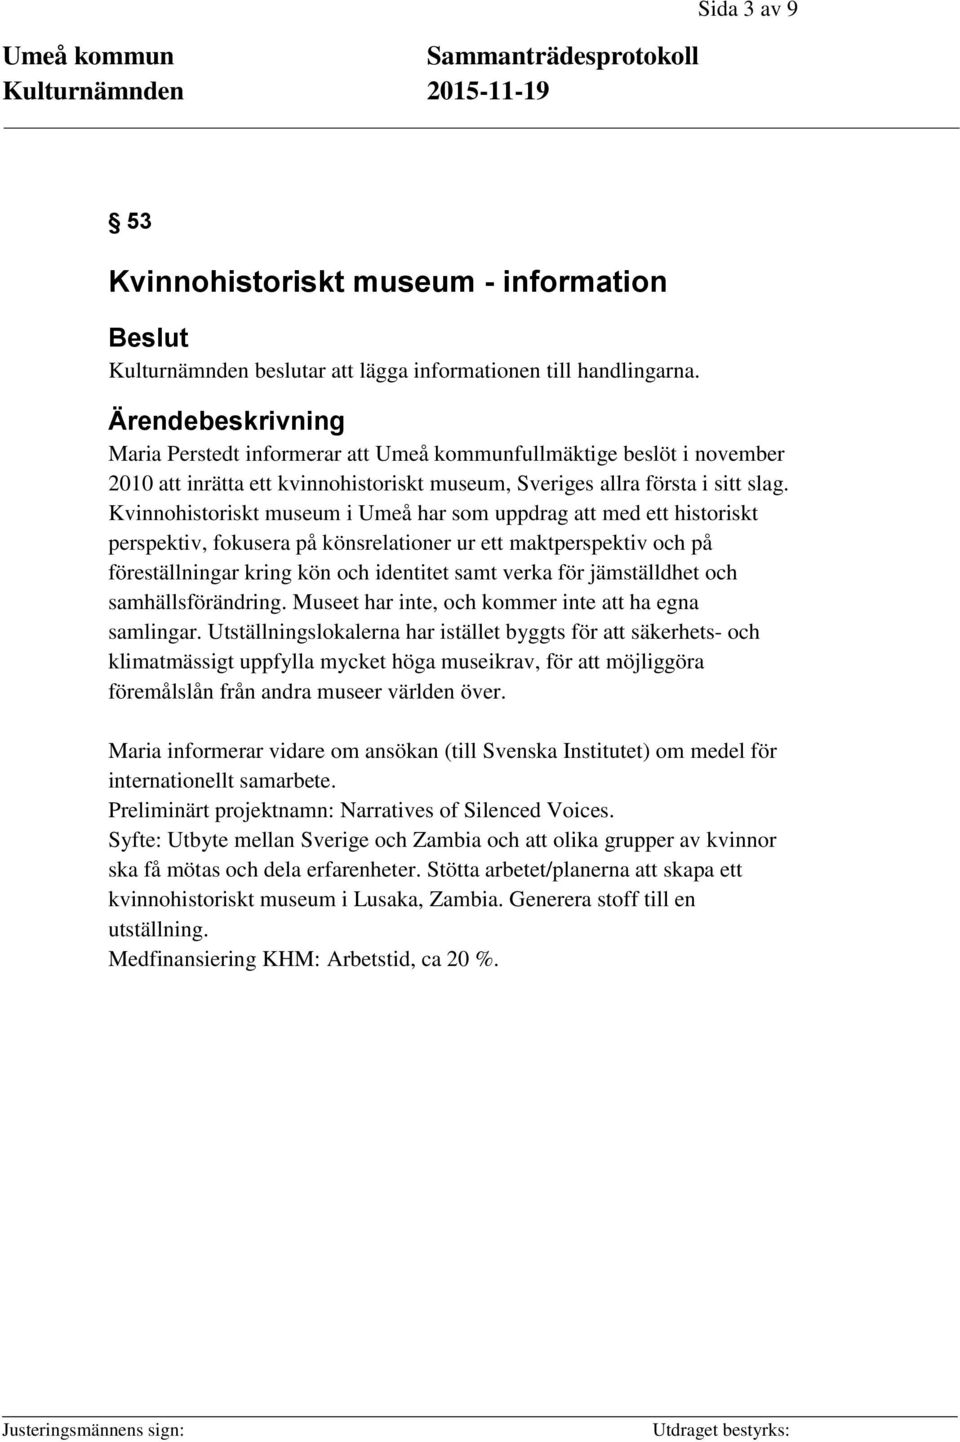 Kvinnohistoriskt museum i Umeå har som uppdrag att med ett historiskt perspektiv, fokusera på könsrelationer ur ett maktperspektiv och på föreställningar kring kön och identitet samt verka för